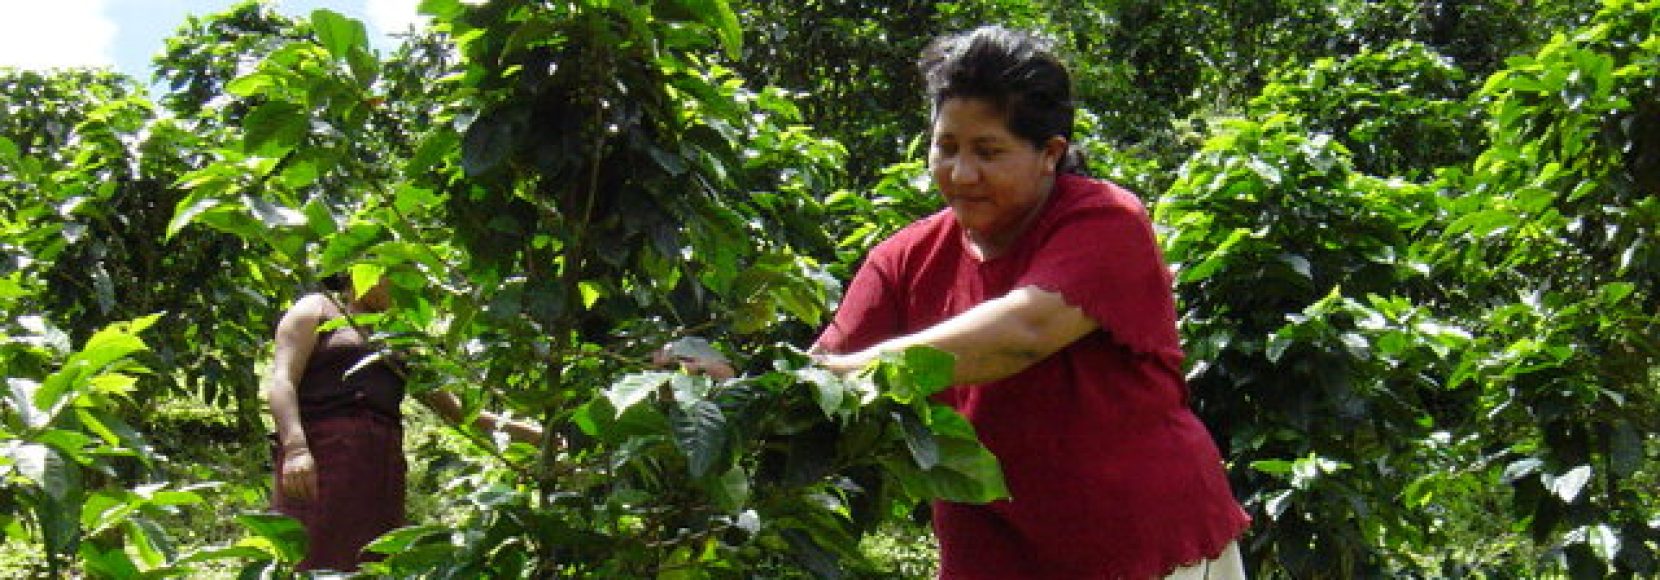 woman coffee farming in Nicaragua